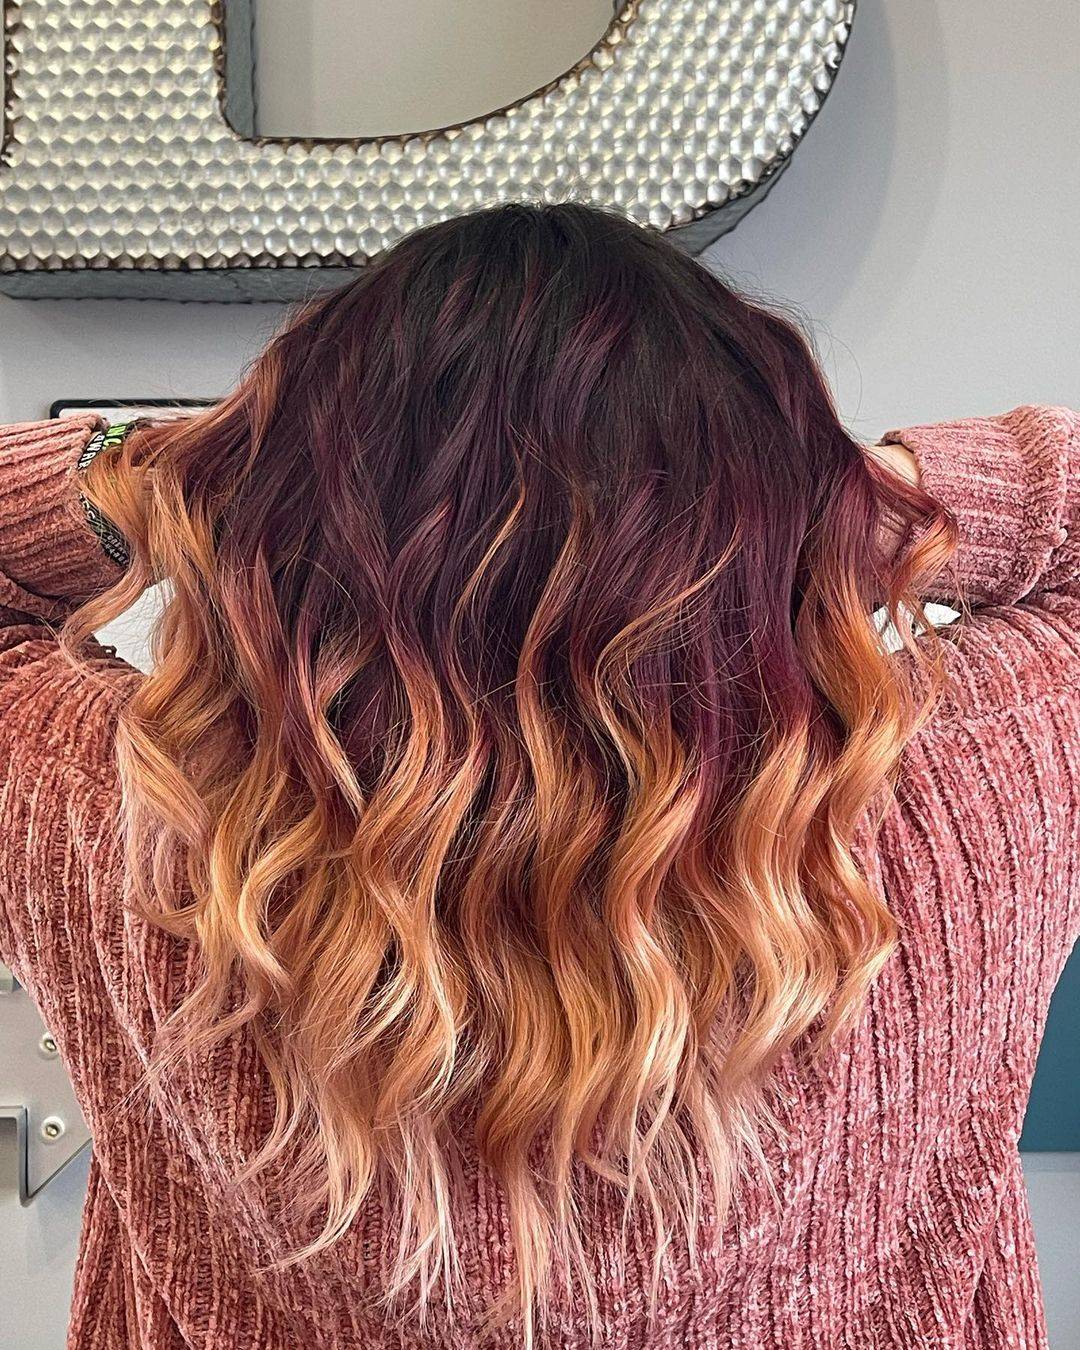 Burgundy hair color 439 burgundy hair color | burgundy hair color for women | burgundy hair color highlights Burgundy Hair Color